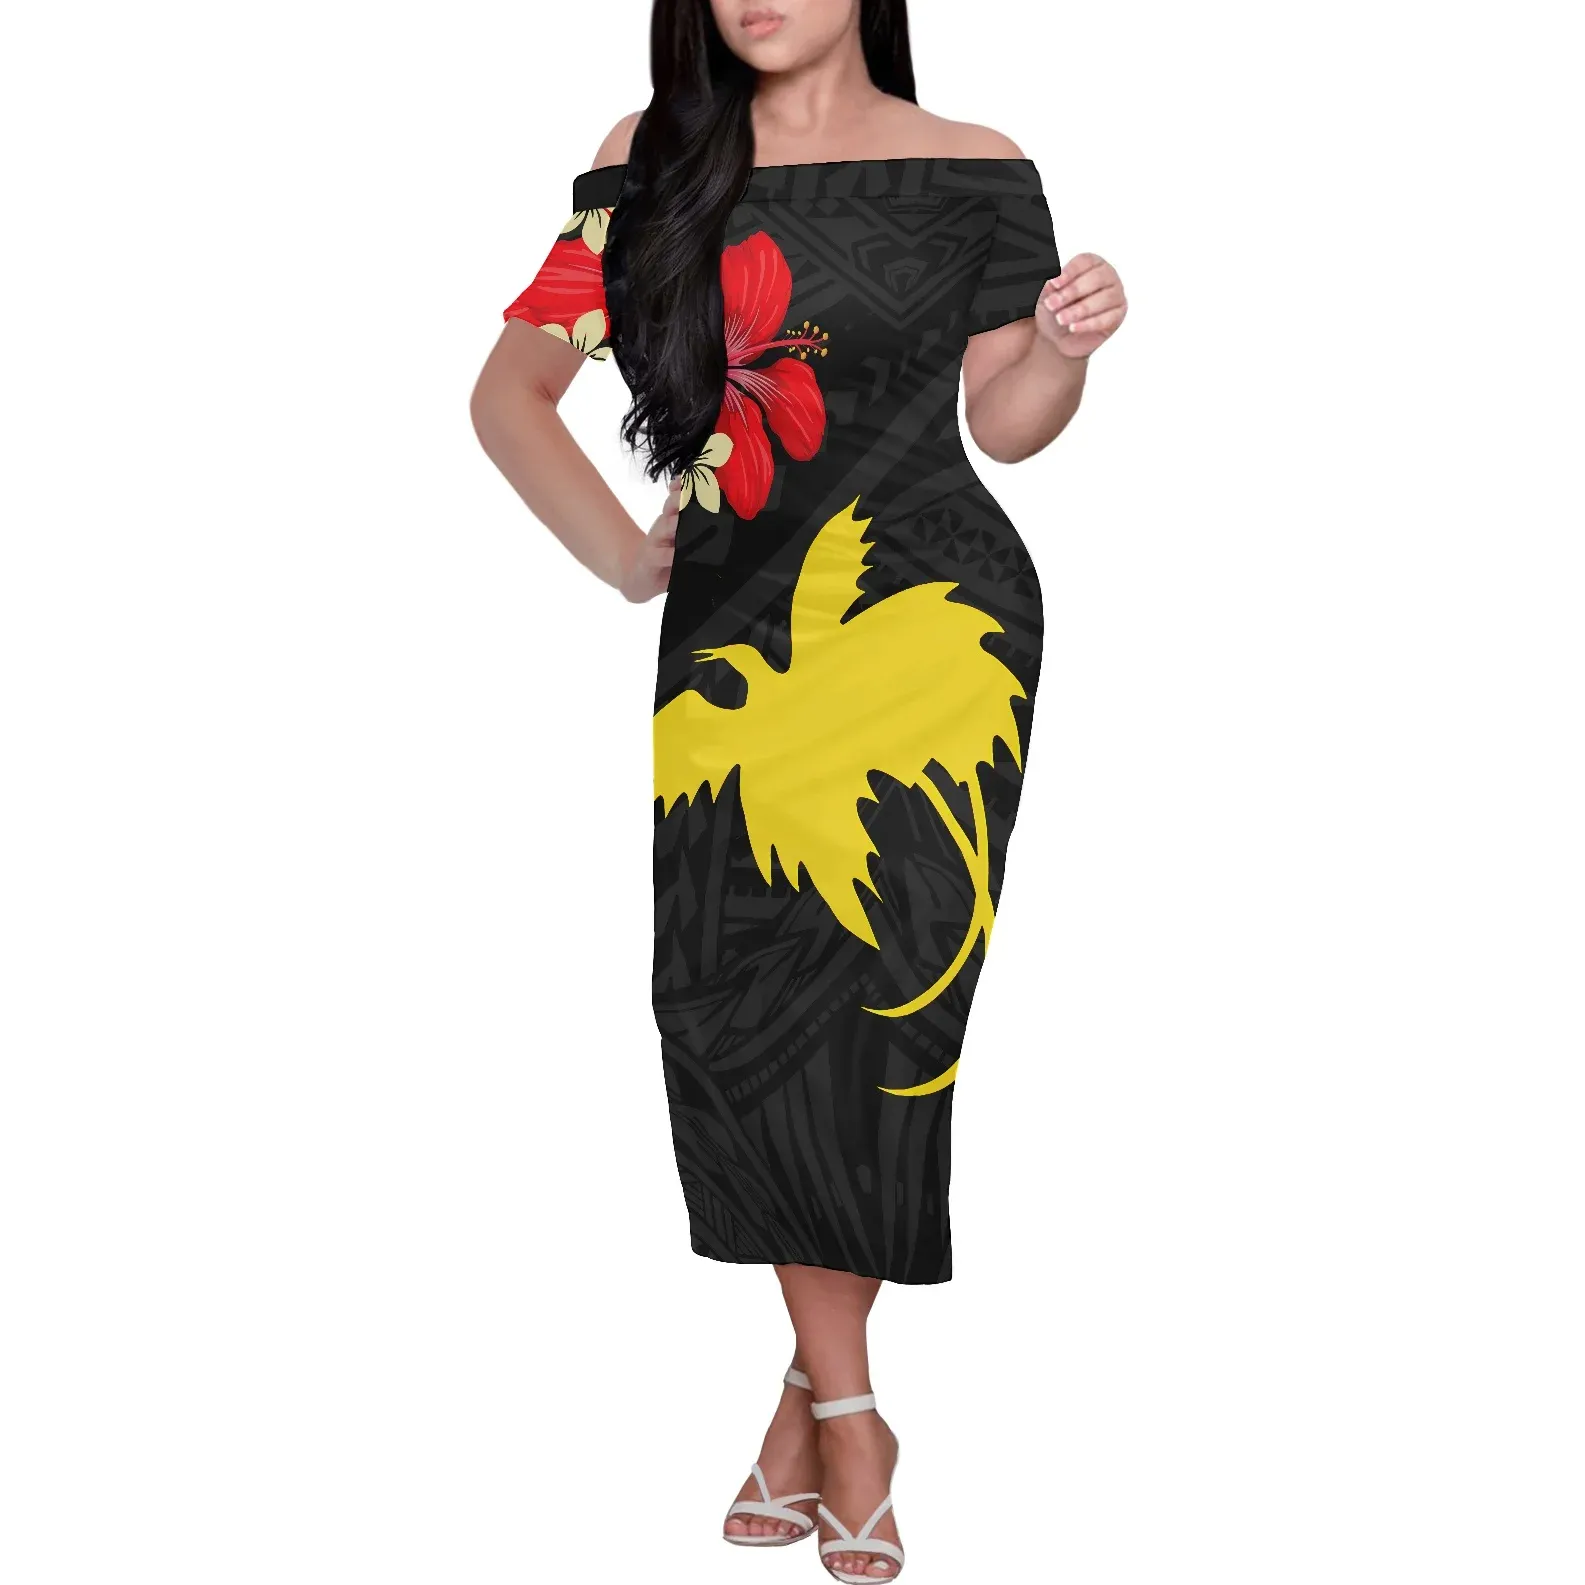 도매 저렴한 가격 맥시 스커트 파푸아 뉴기니 폴리네시아 스타일 여성의 오프 숄더 원피스 개인 라벨 의류 드레스